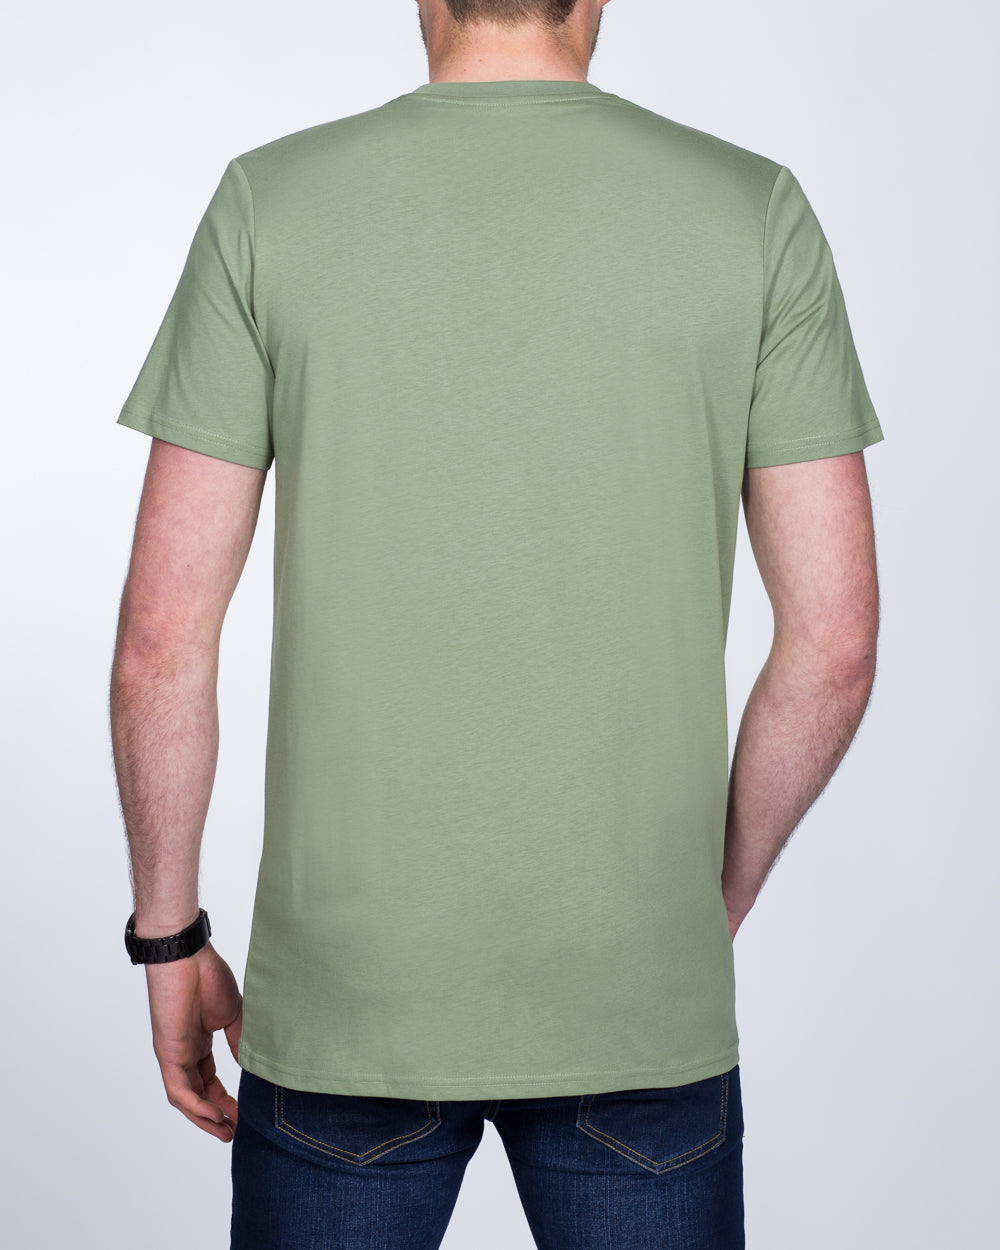 Girav Sydney Extra Tall T-Shirt (sea green)